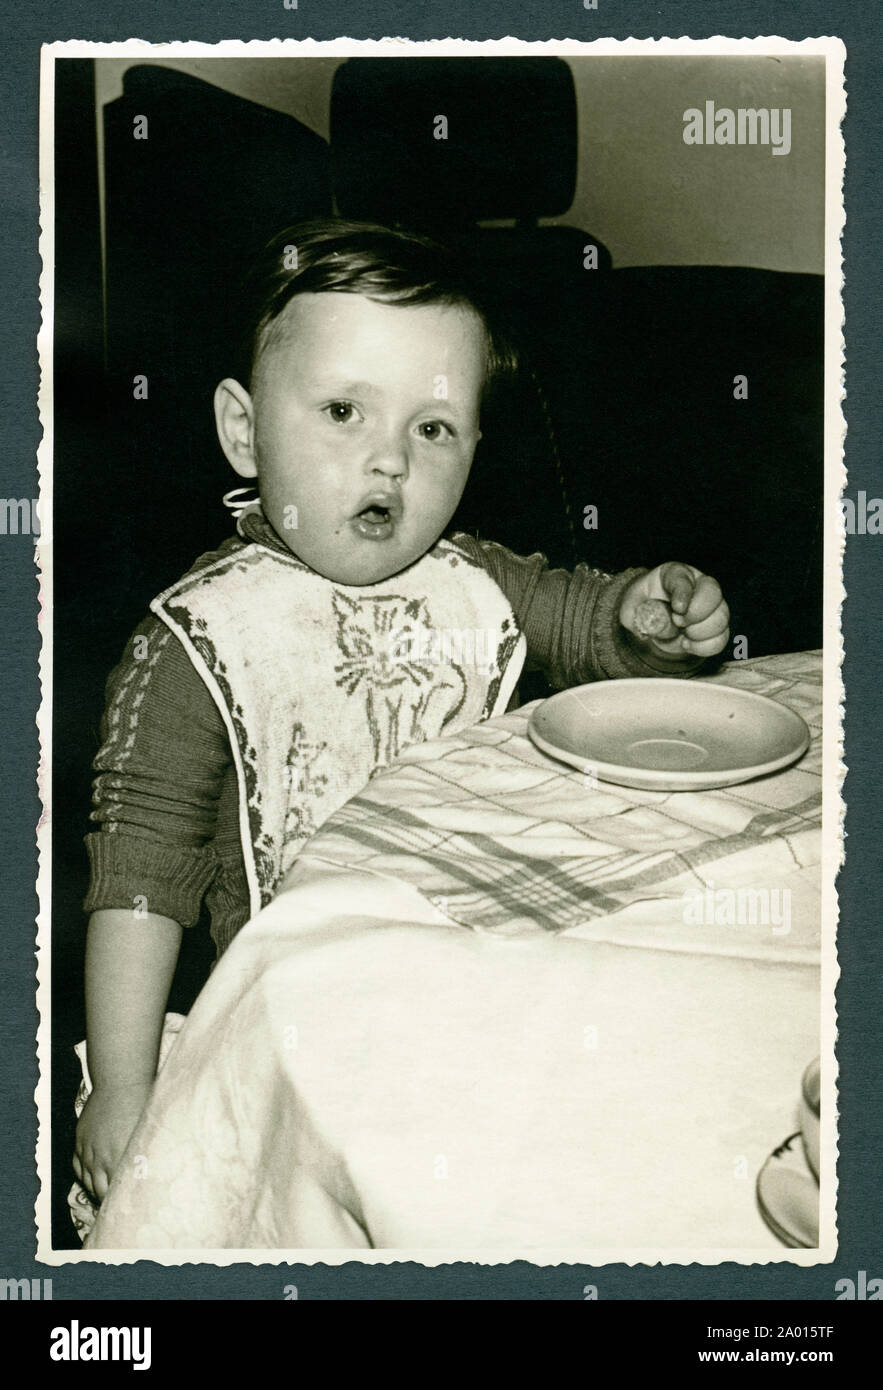 Europa, Deutschland, Amburgo, kleines tipo beim Essen, in den 1950er Jahren . / Europa, Germania, Amburgo, un giovane bambino mangiare, in 1950th . Foto Stock